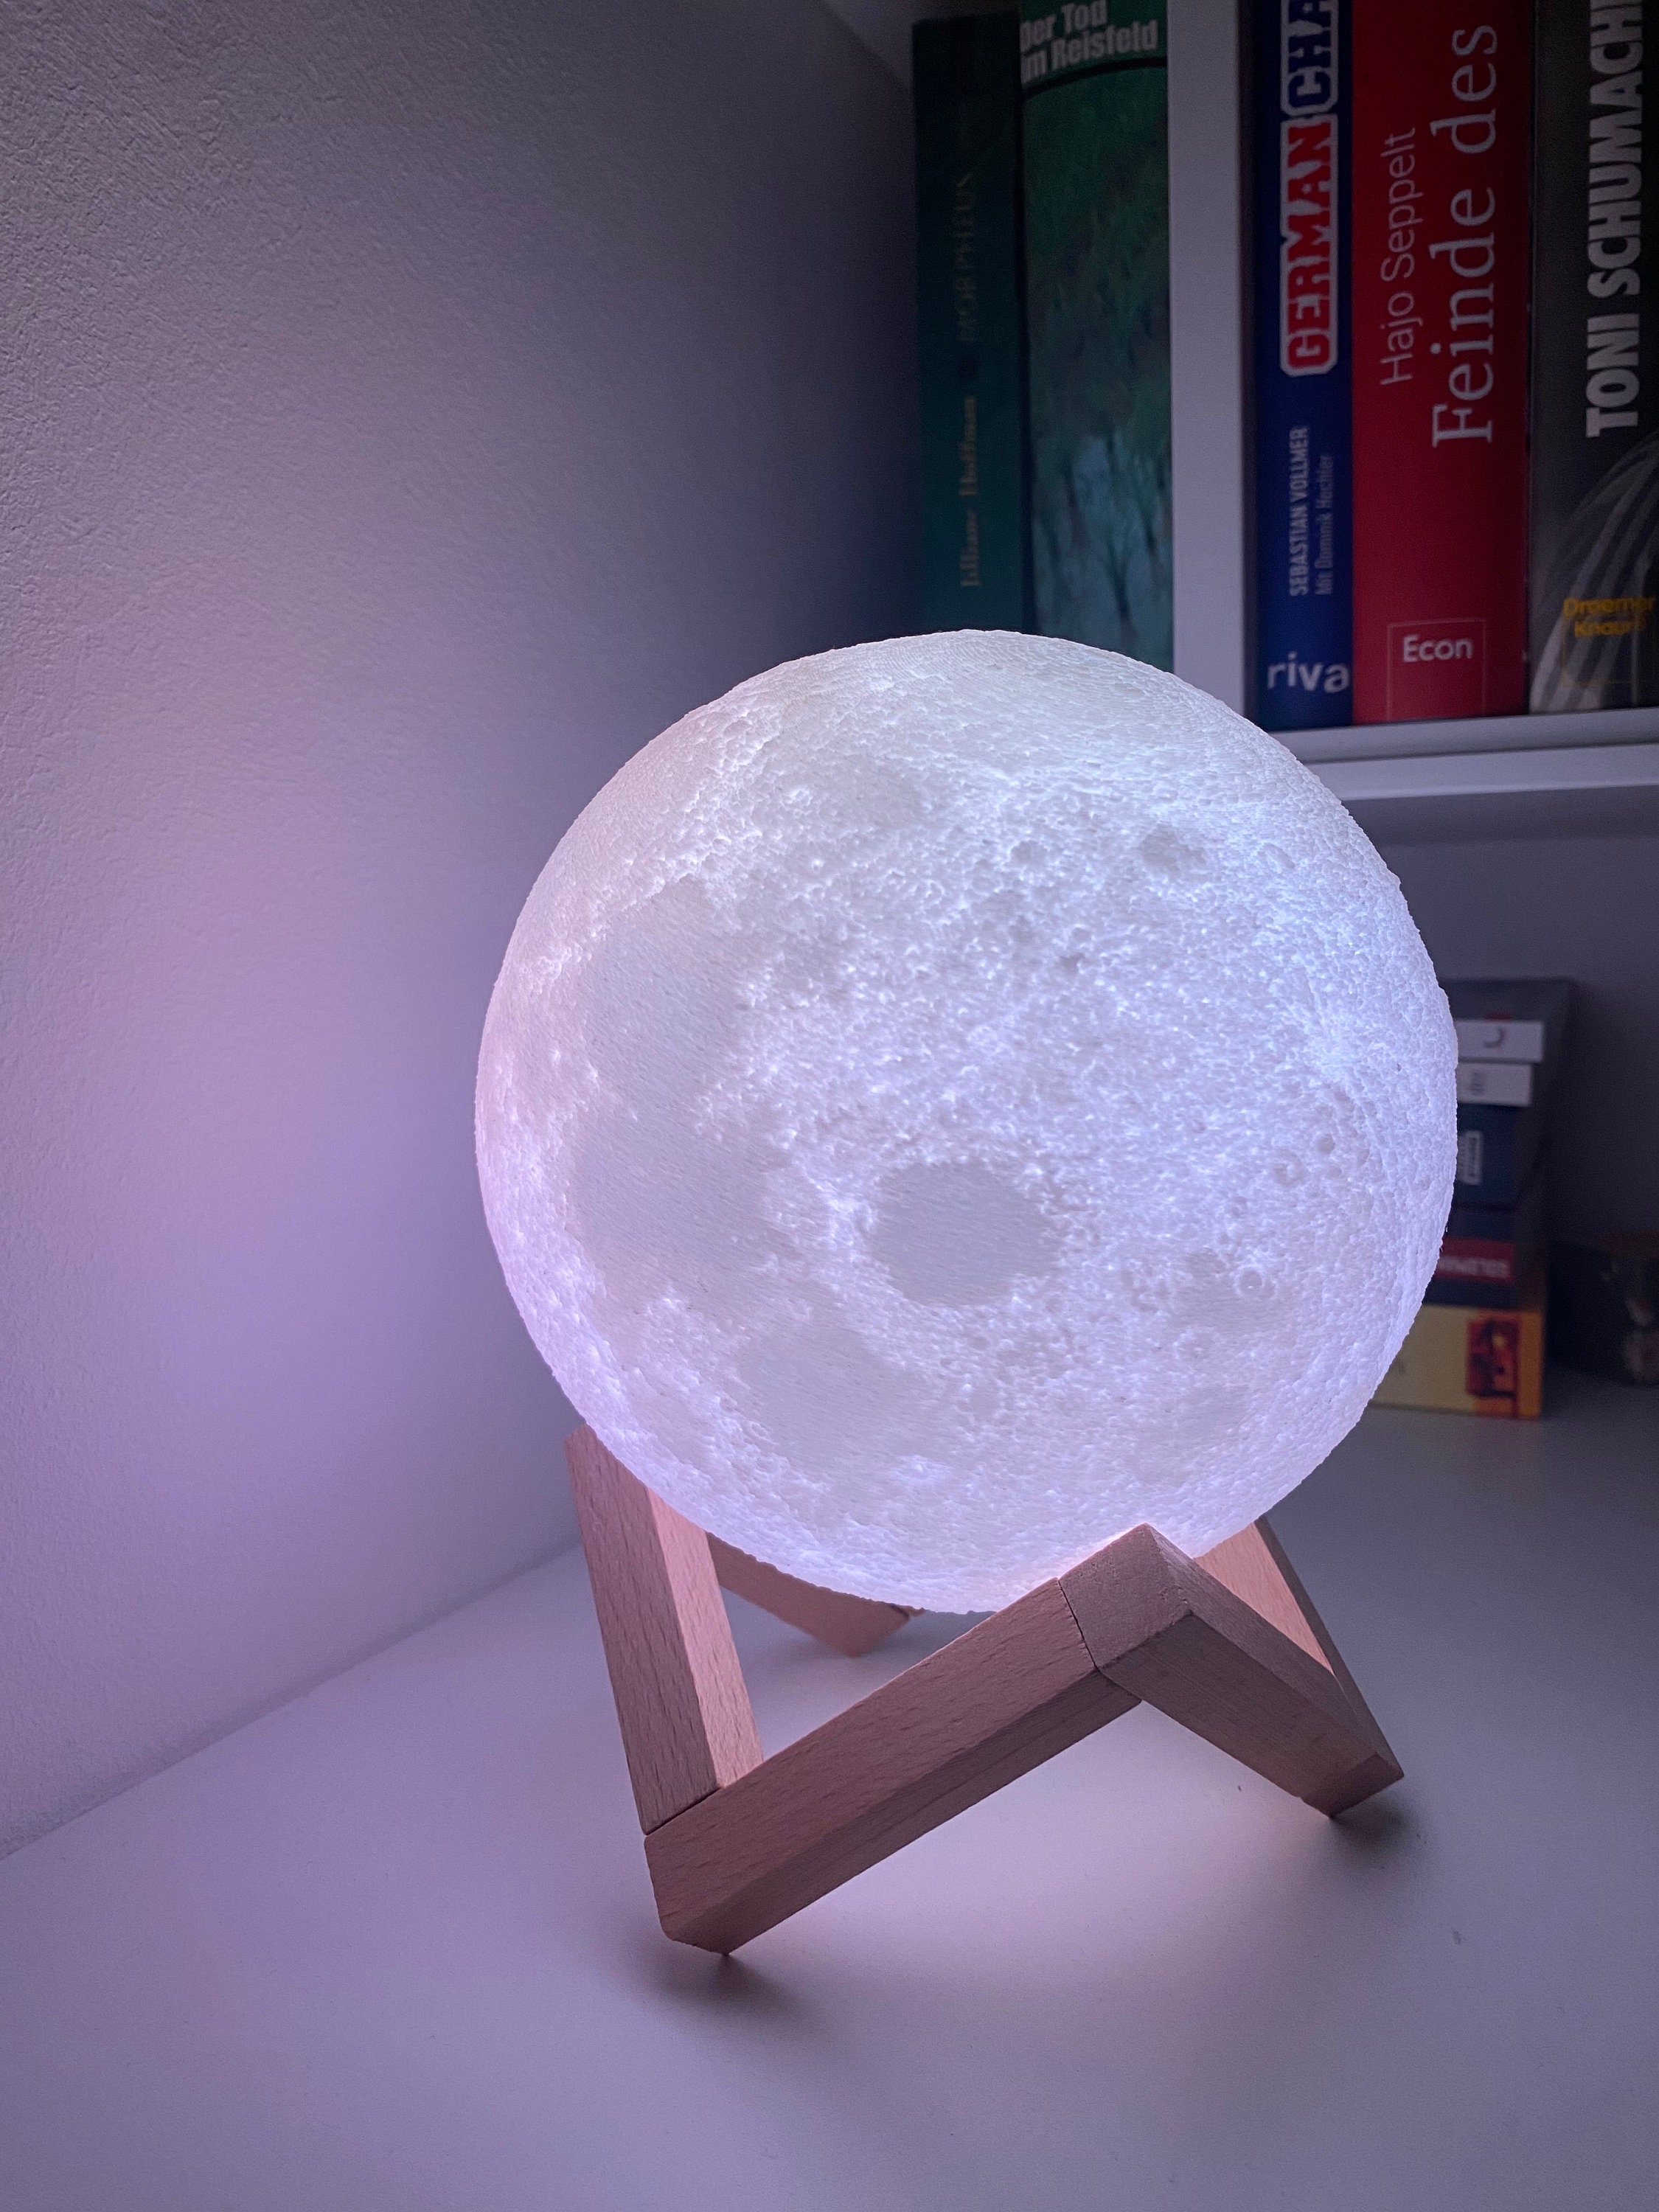 Kaufe Dropship 3D Druck Wiederaufladbare Mond Lampe LED Nachtlicht Kreative  Touch Schalter Mond Licht Für Schlafzimmer Dekoration Geburtstag Geschenk